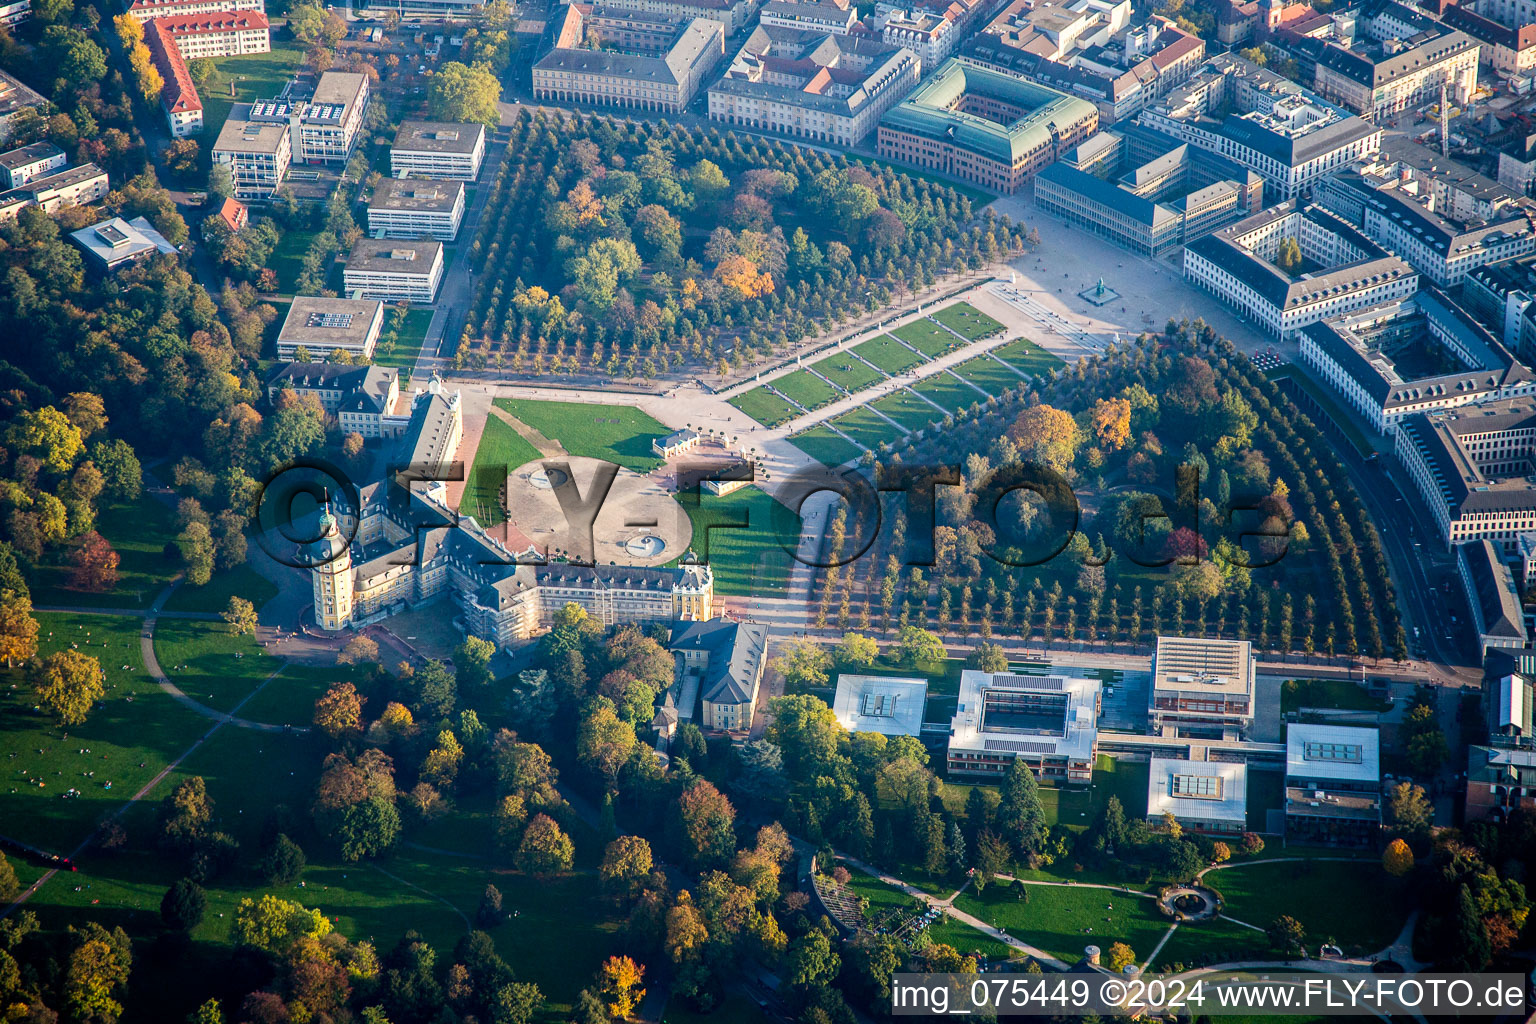 Vue aérienne de Terrain et parc du château Karlsruhe. Le château de Karlsruhe a été construit en 1715 comme résidence du margrave Karl Wilhelm de Baden-Durlach. Aujourd'hui, le bâtiment abrite le Musée national de Bade. à le quartier Innenstadt-West in Karlsruhe dans le département Bade-Wurtemberg, Allemagne